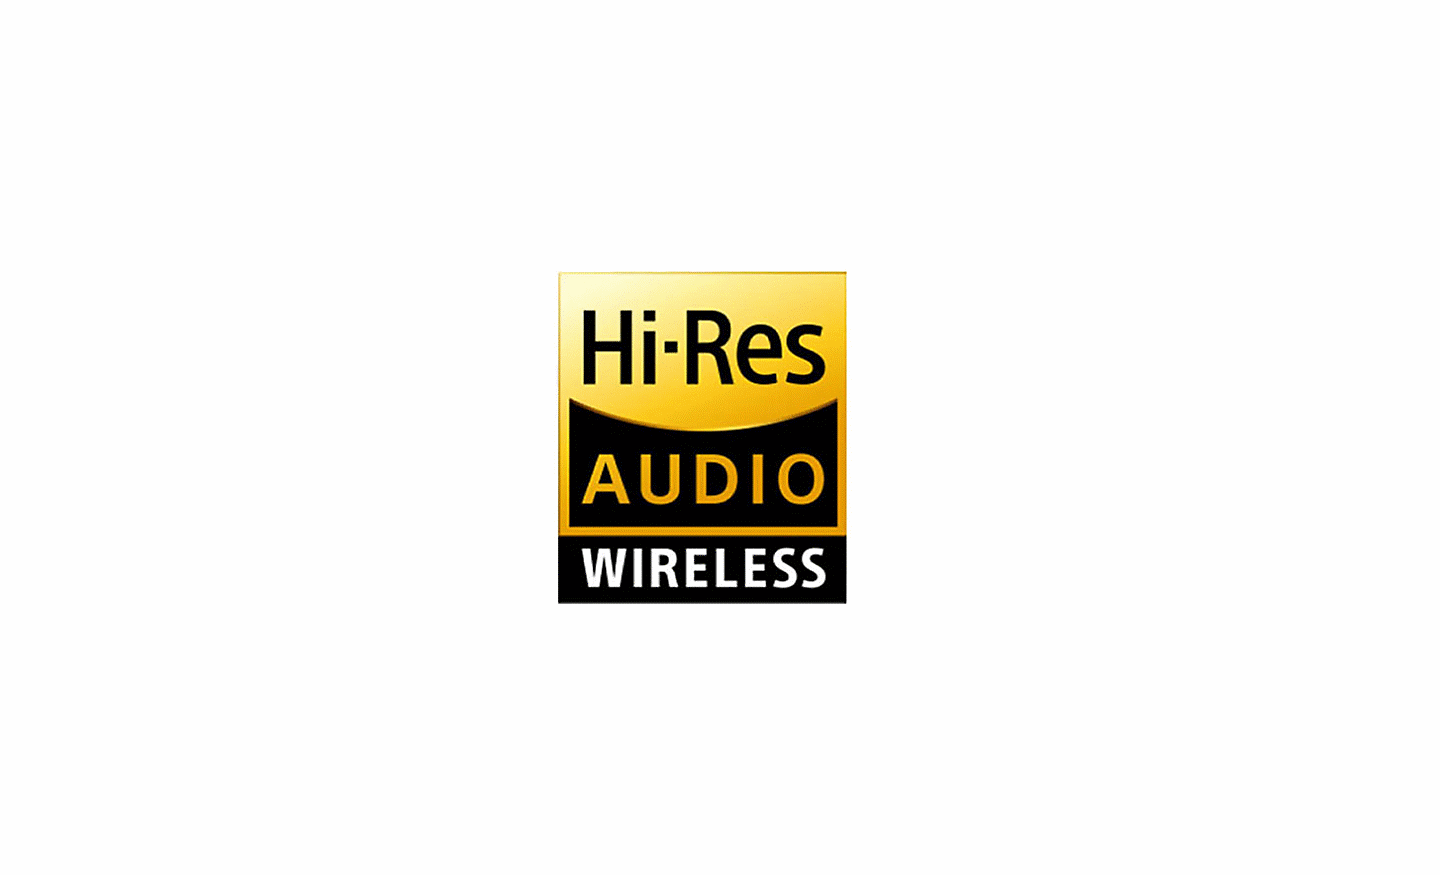 Imagen del logotipo de “Hi-Res Audio Wireless” (audio de alta resolución inalámbrico)